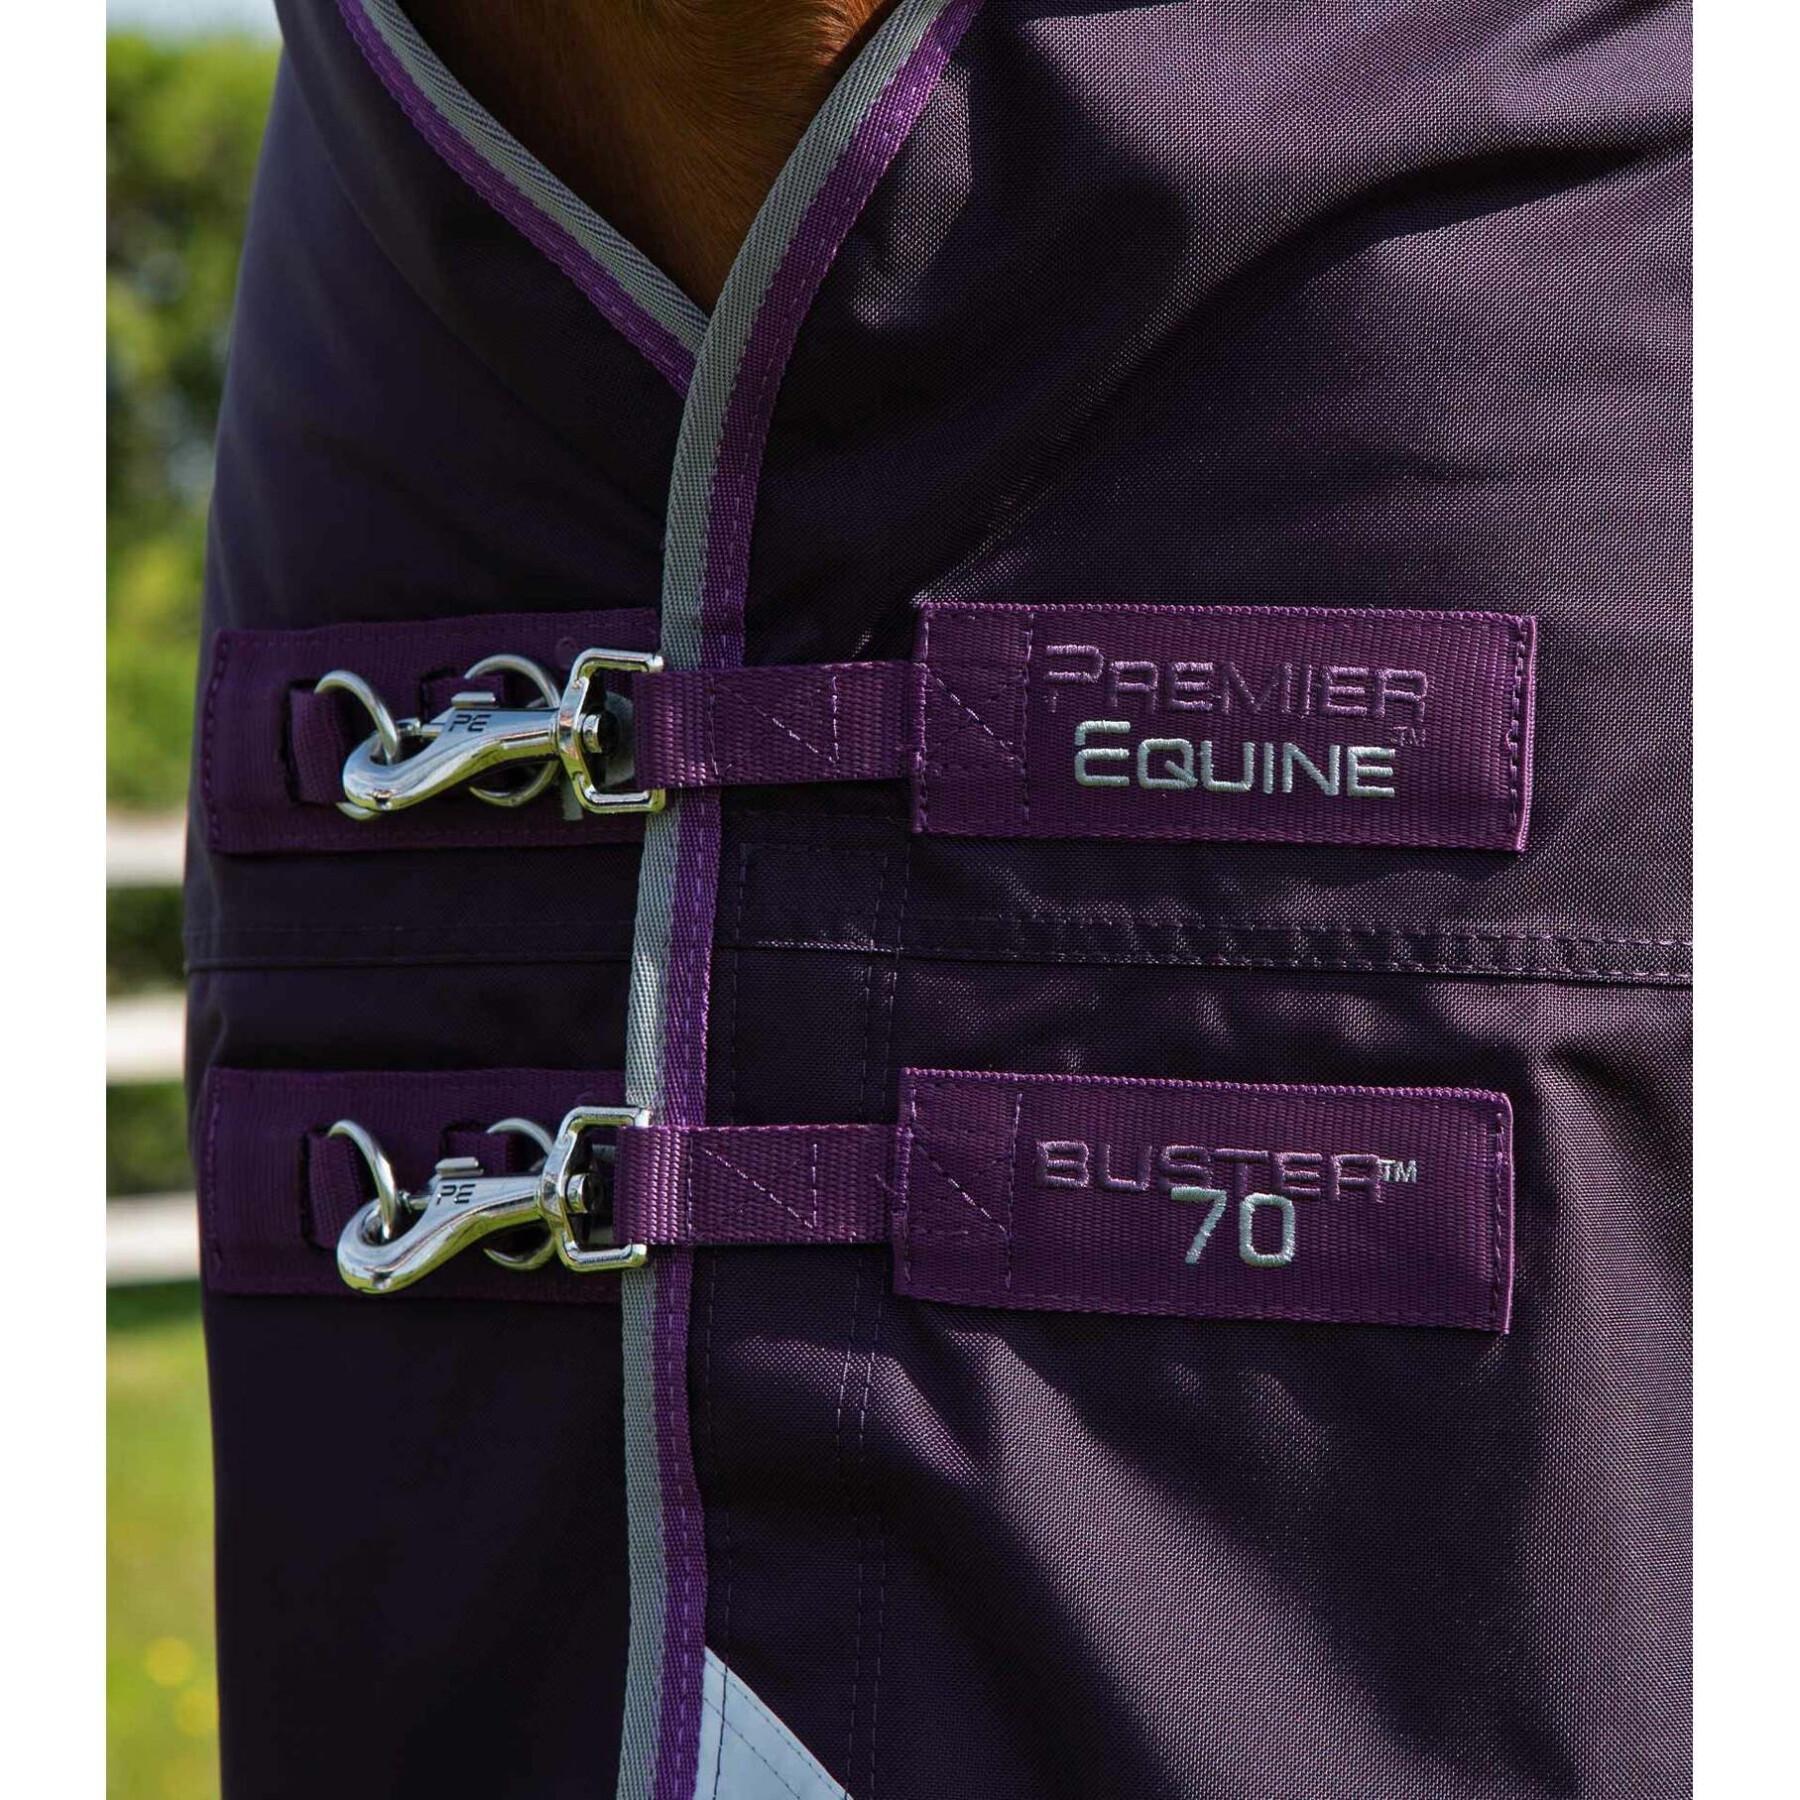 Wasserdichte Outdoor-Decke mit Halsteil Premier Equine Buster 70 g